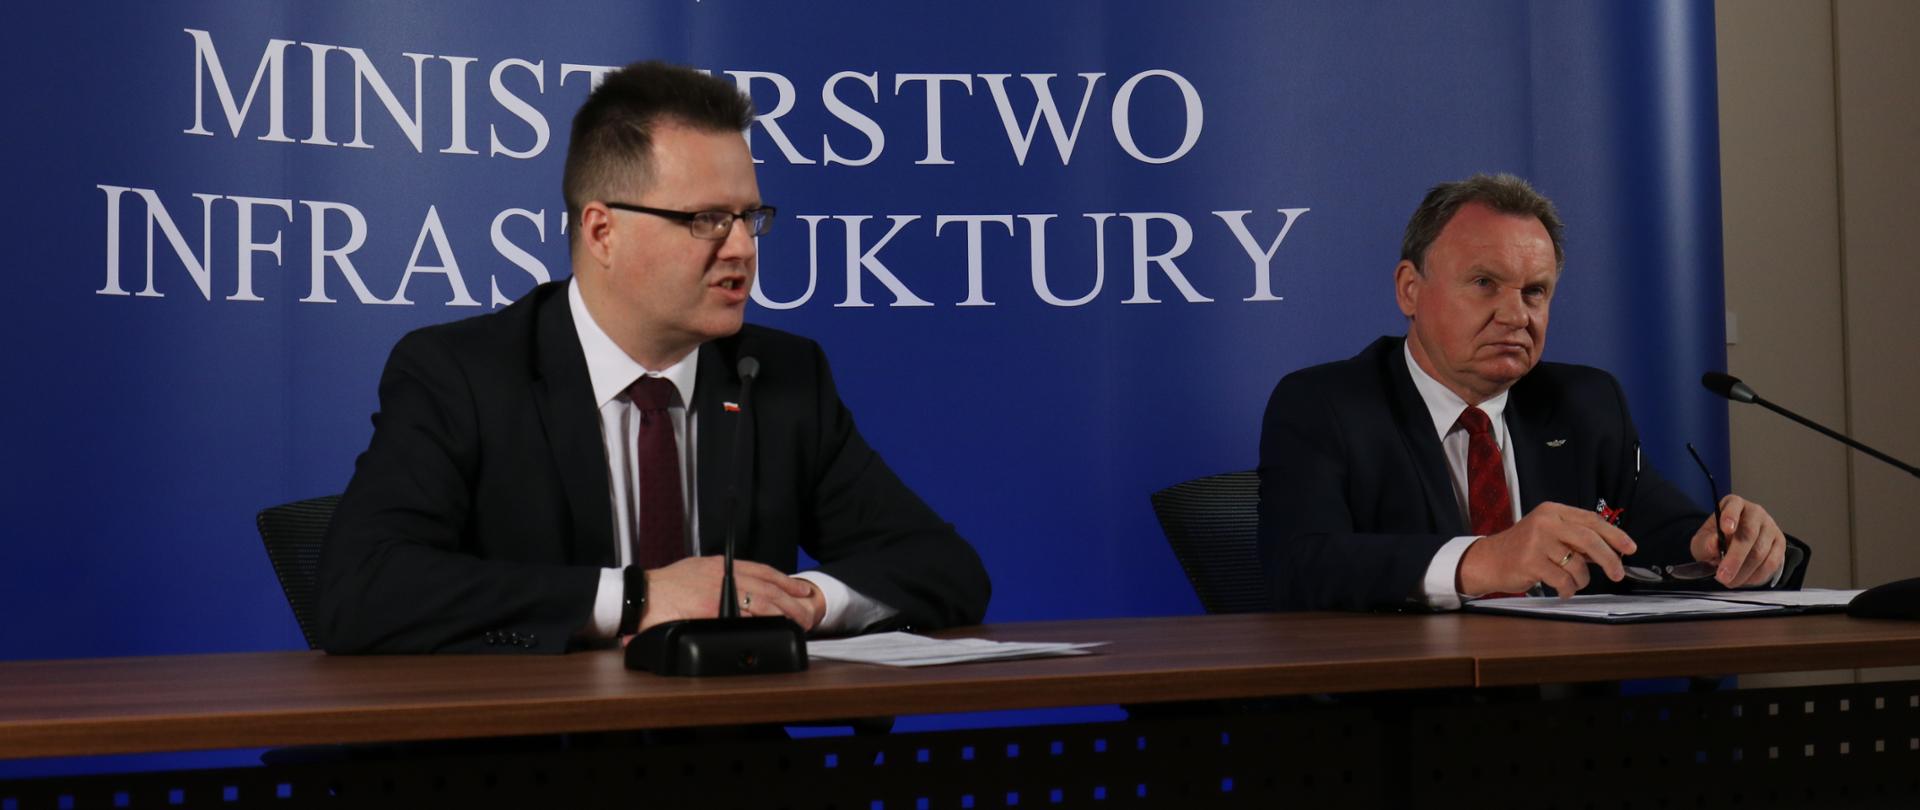 Na zdjęciu widać dwóch mężczyzn siedzących przy stole, w ich tle widać niebieską ściankę z białym napisem Ministerstwo Infrastruktury